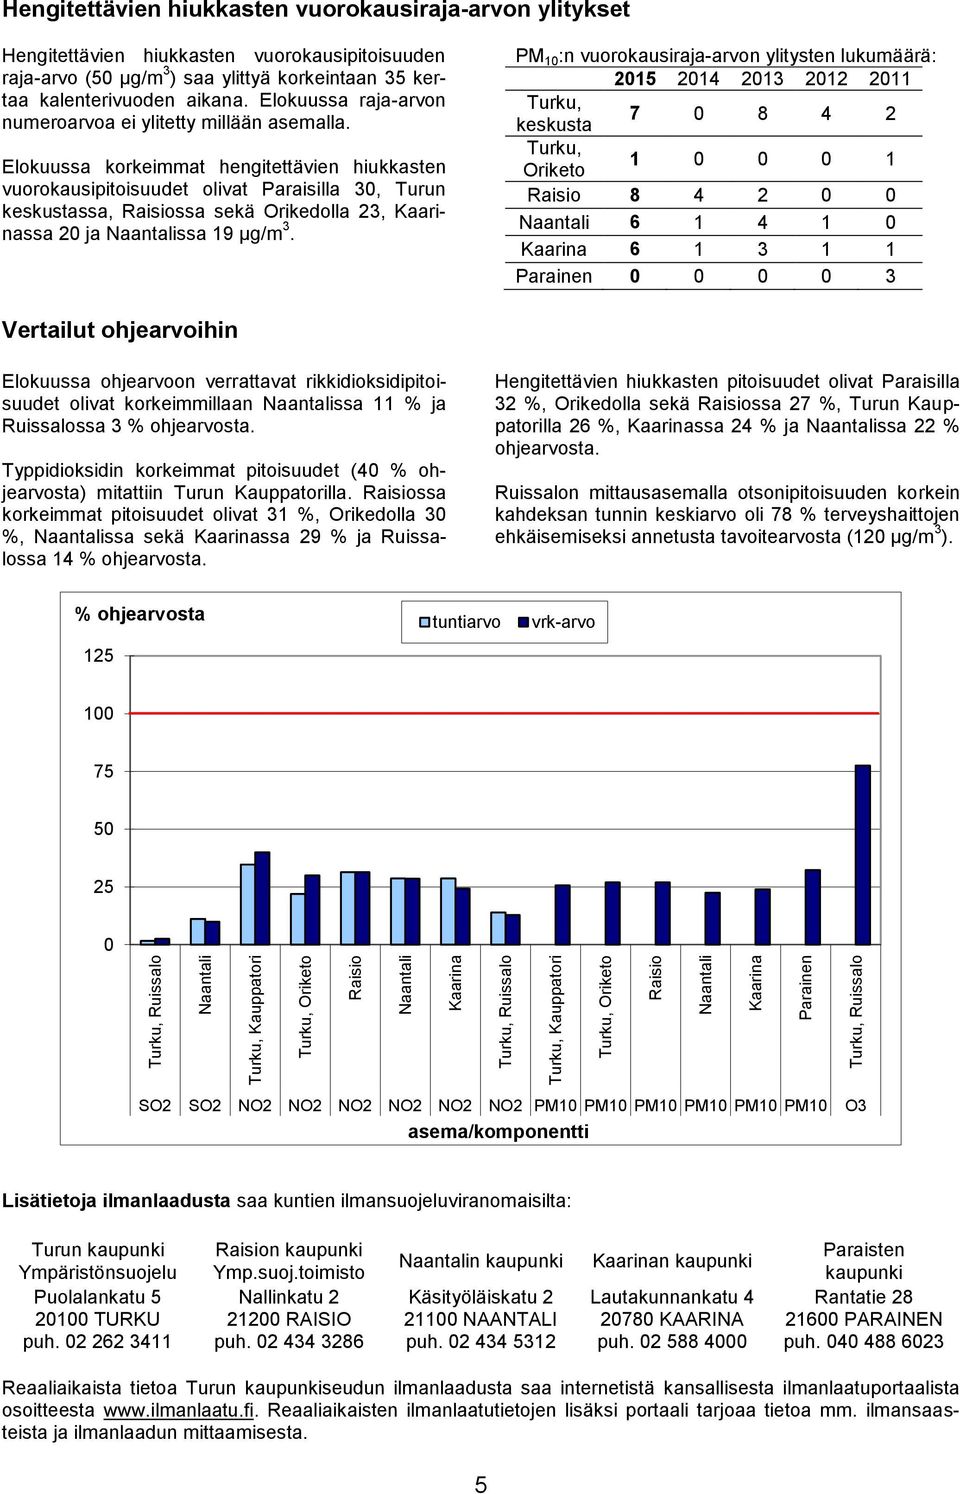 Elokuussa korkeimmat hengitettävien hiukkasten vuorokausipitoisuudet olivat Paraisilla 30, Turun keskustassa, ssa sekä Orikedolla 23, ssa 20 ja ssa 19 µg/m 3.